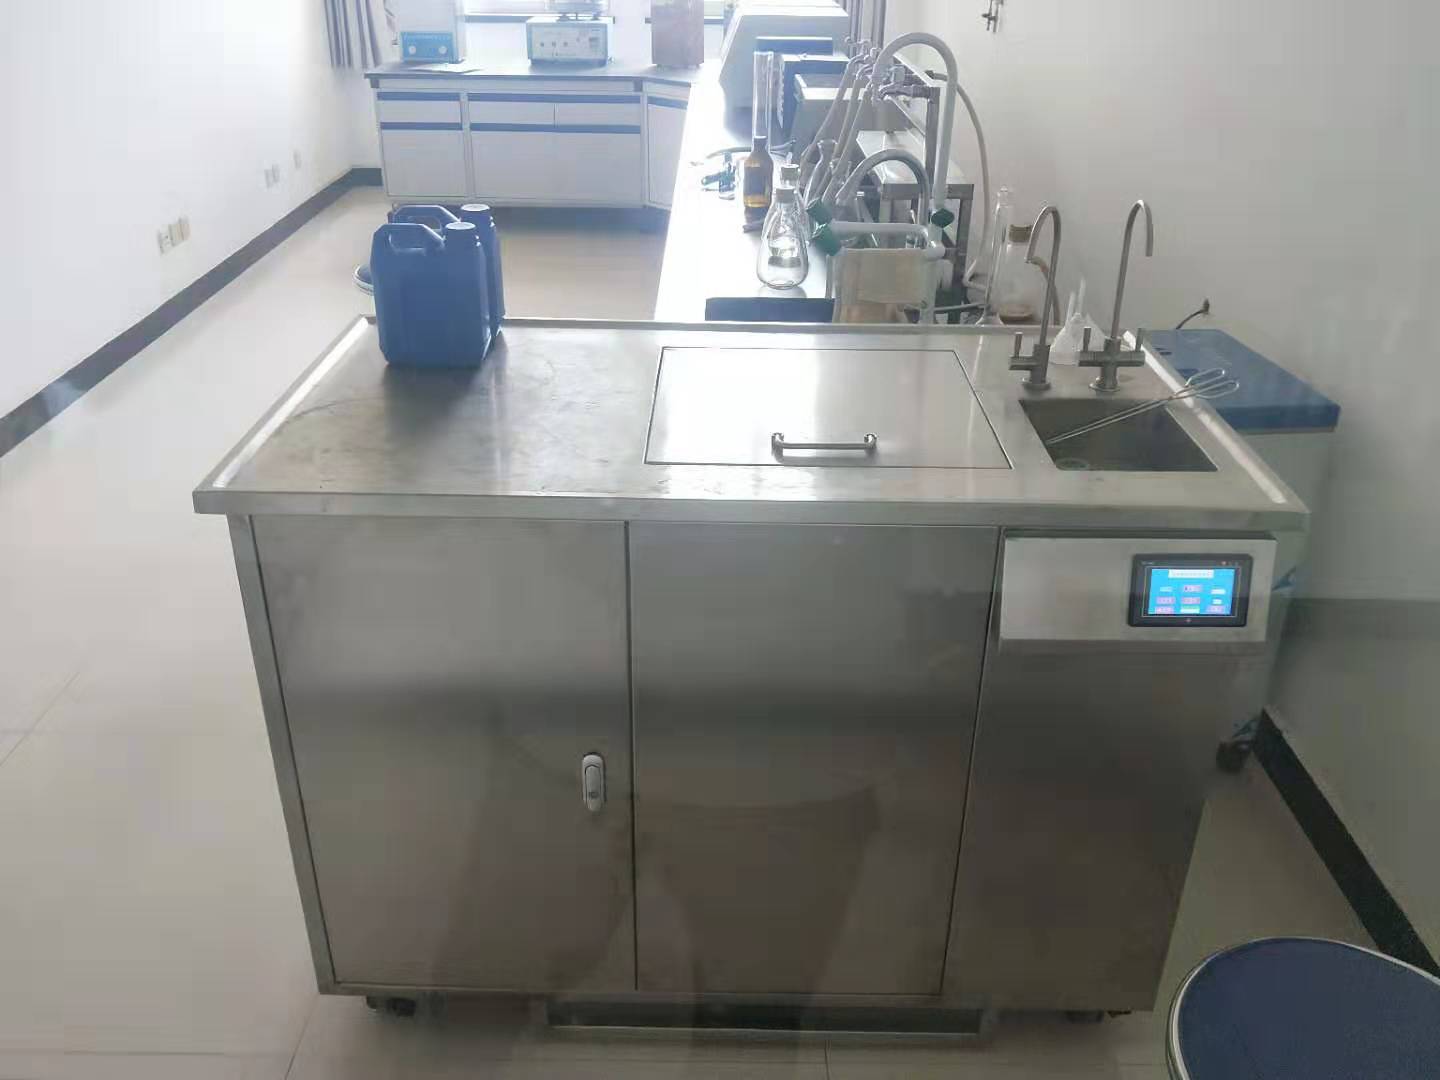 河南省粮油饲料产品质量监督检验中心使用中的多功能超声波洗瓶机